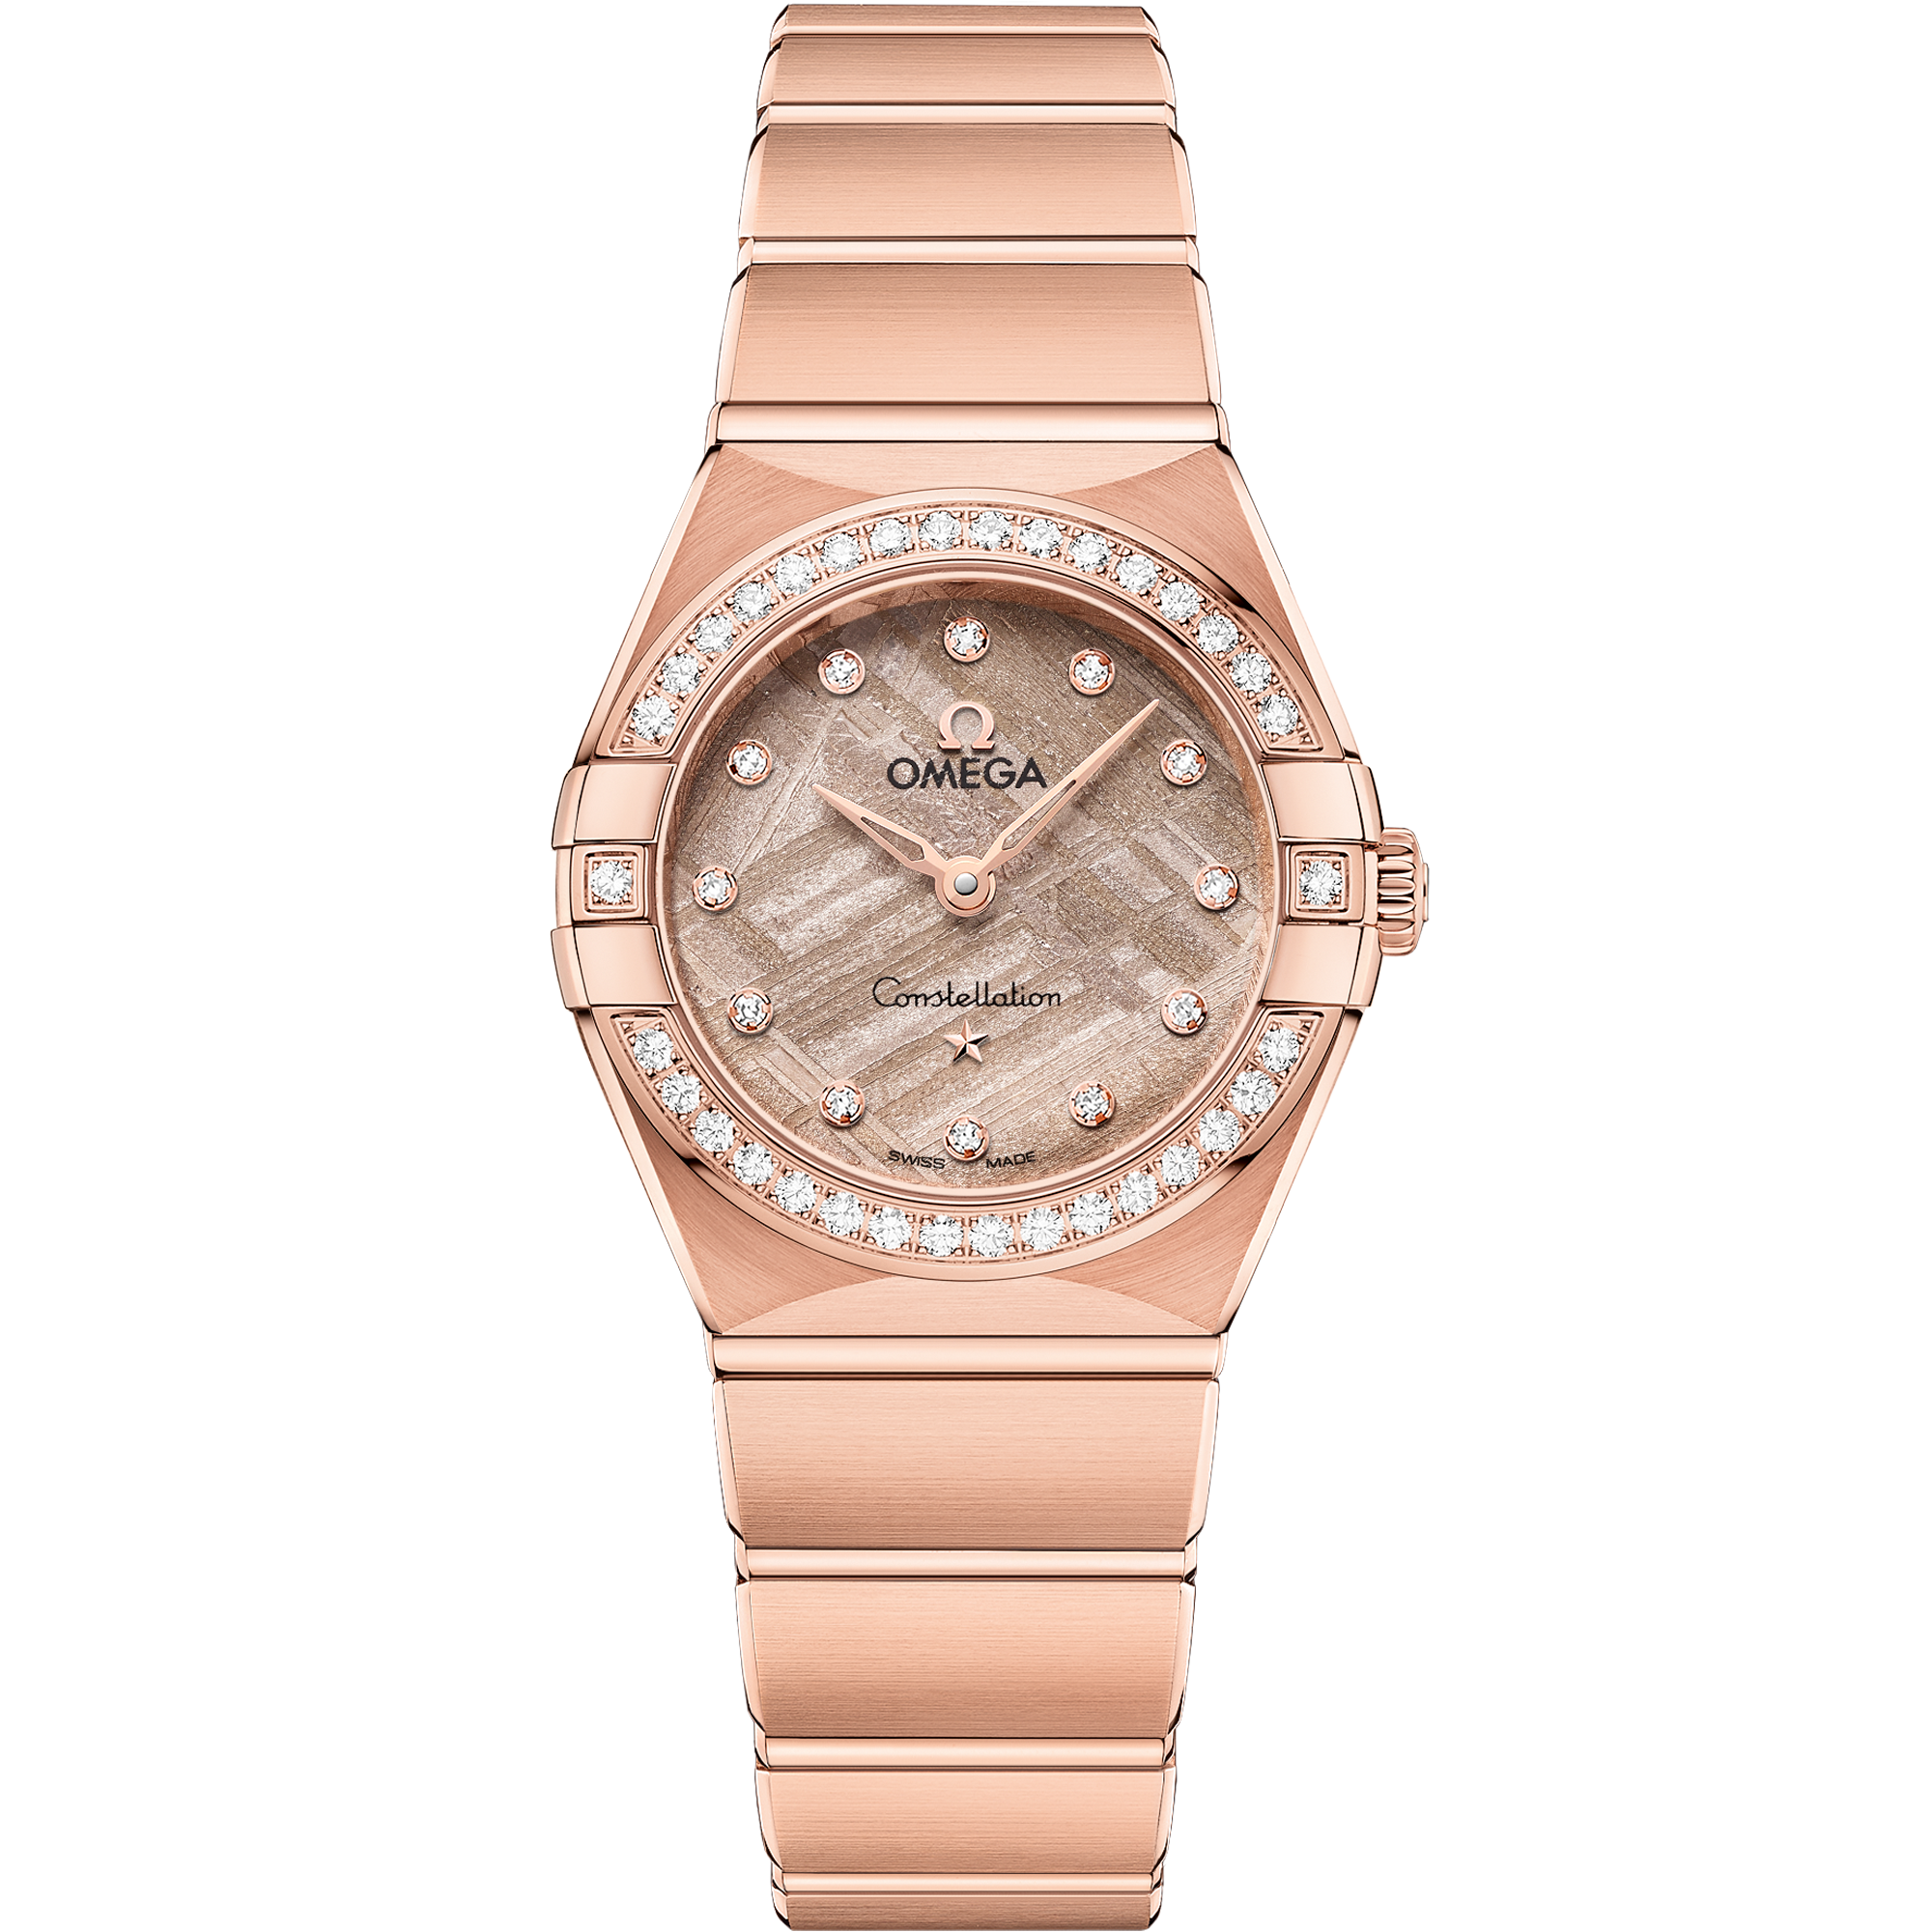 Relógio com mostrador Cor-de-rosa com caixa em Ouro Sedna™ e Constellation 25 mm, Ouro Sedna™ em Ouro Sedna™ - 131.55.25.60.99.002 em Ouro Sedna™ bracelet